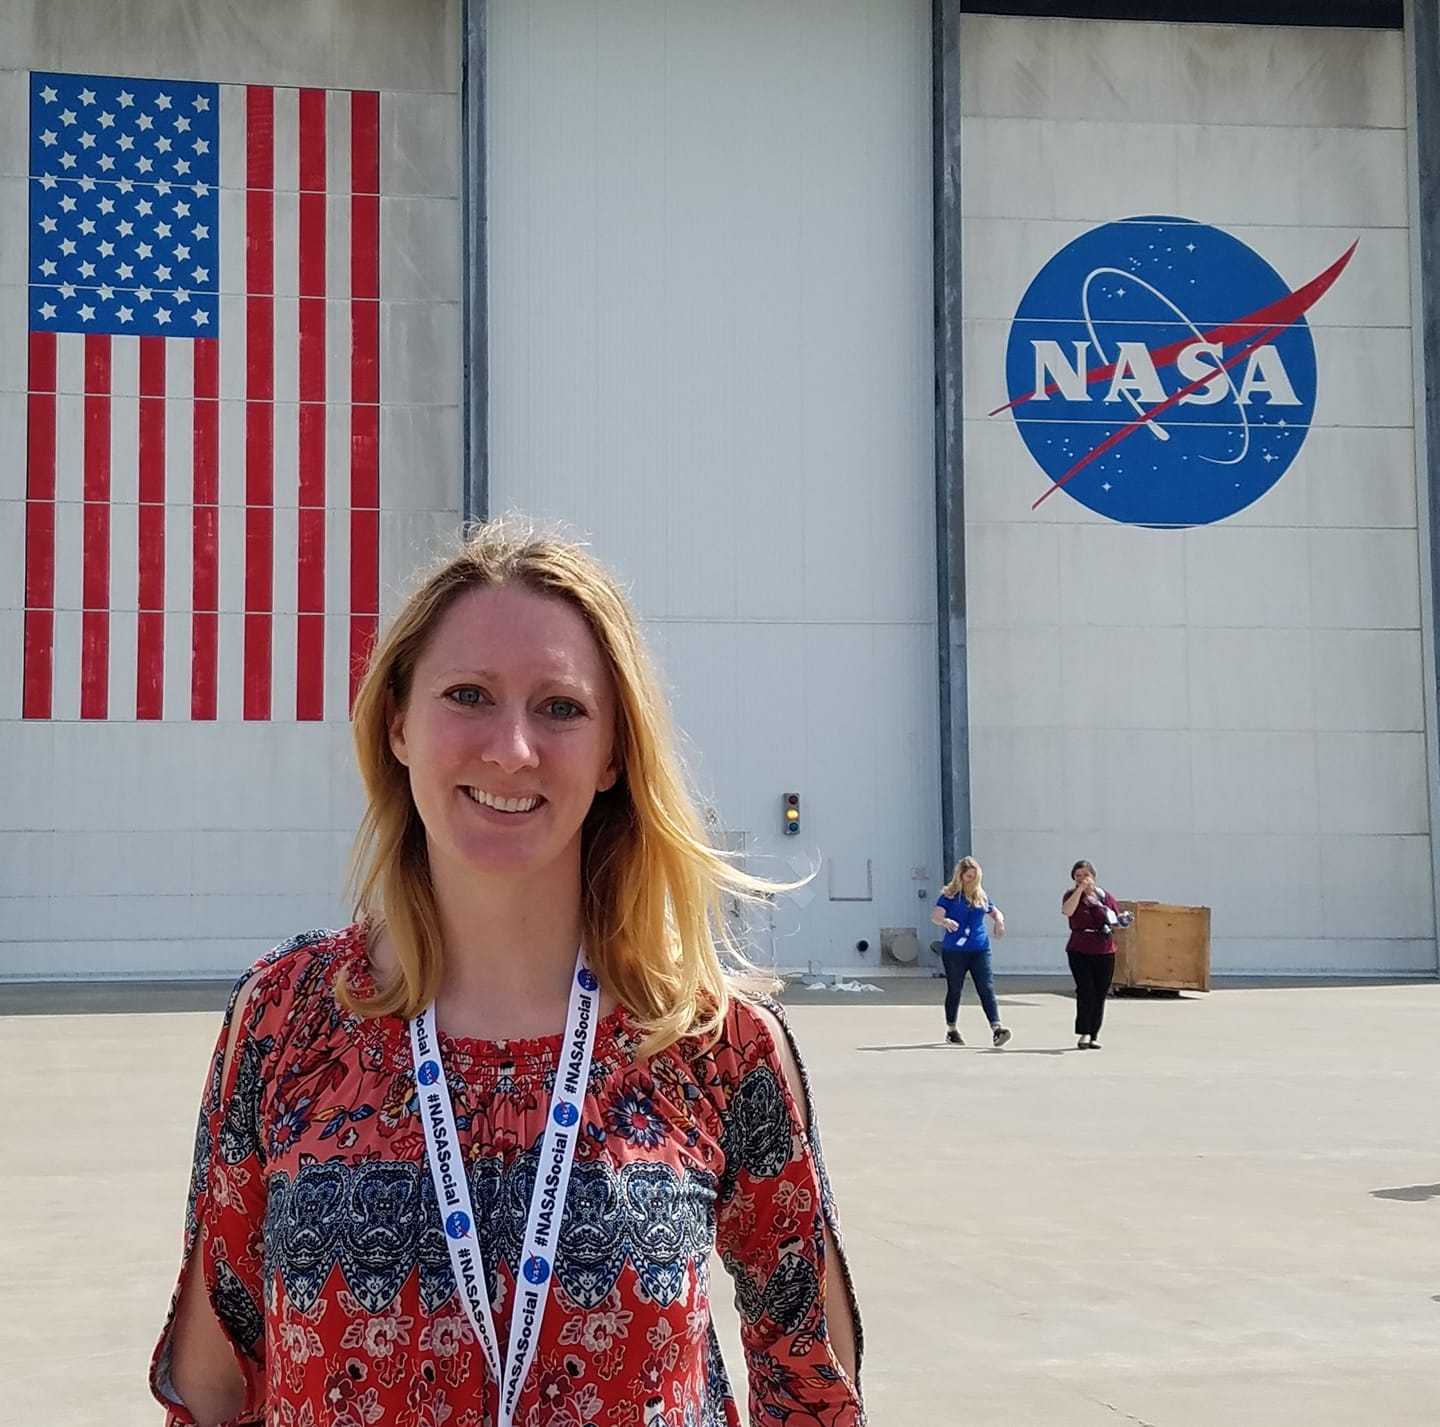 Victoria at NASA